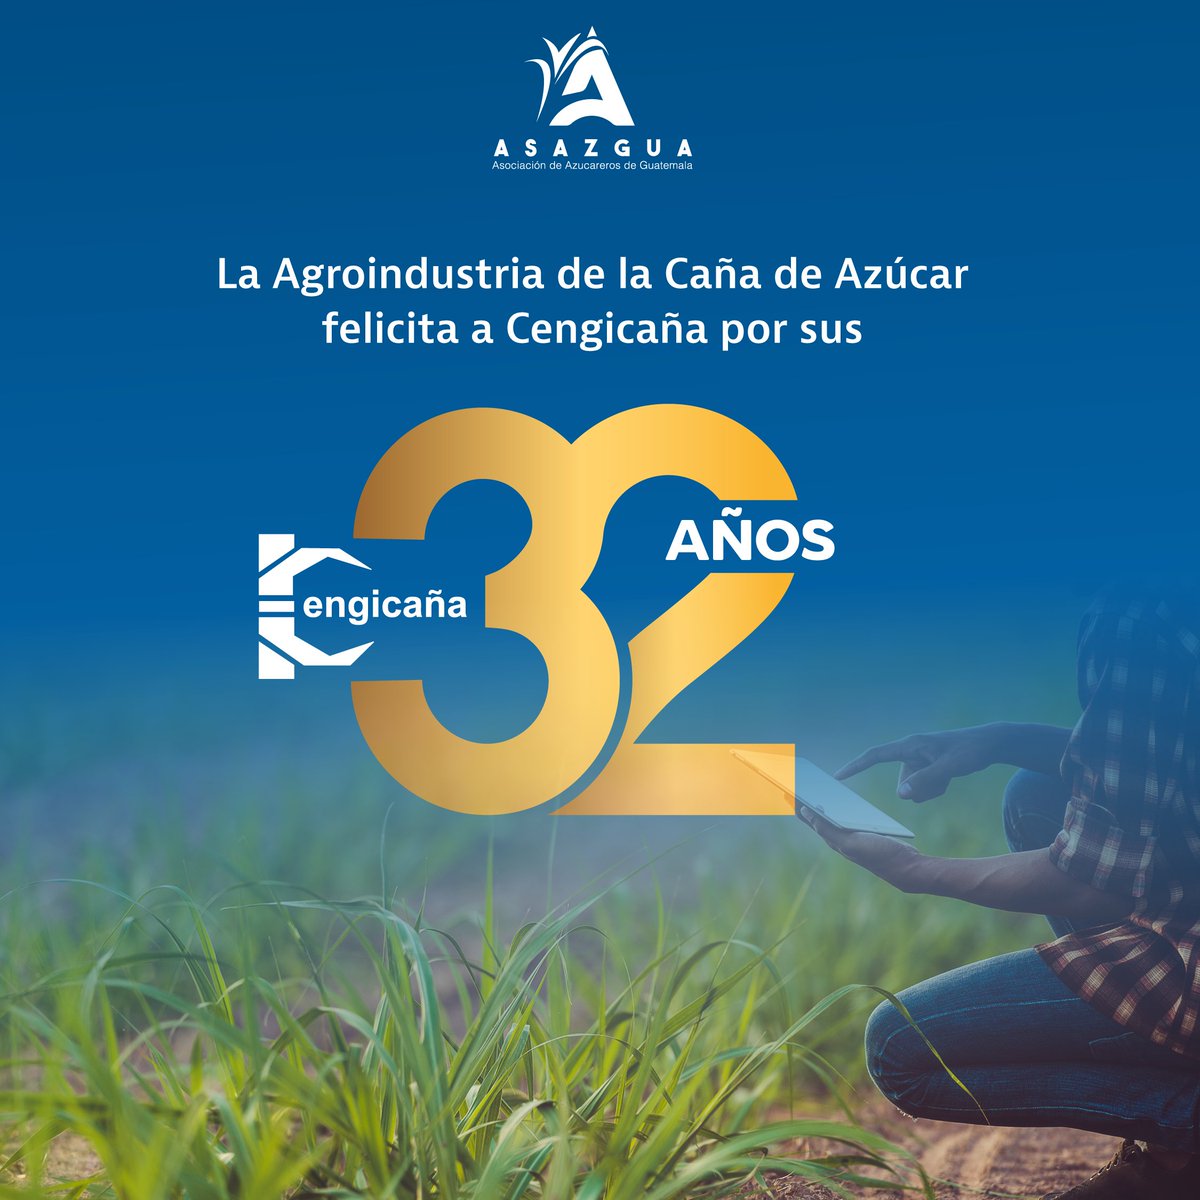 ¡Feliz aniversario No. 32, Cengicaña! 🎉

Gracias por la incansable labor en la investigación, que ha sido fundamental para el avance y la innovación en la Agroindustria de la Caña de Azúcar. 🧑‍🔬👩‍🔬

#AniversarioCengicaña #Investigación #AgroindustriaCañaAzúcar